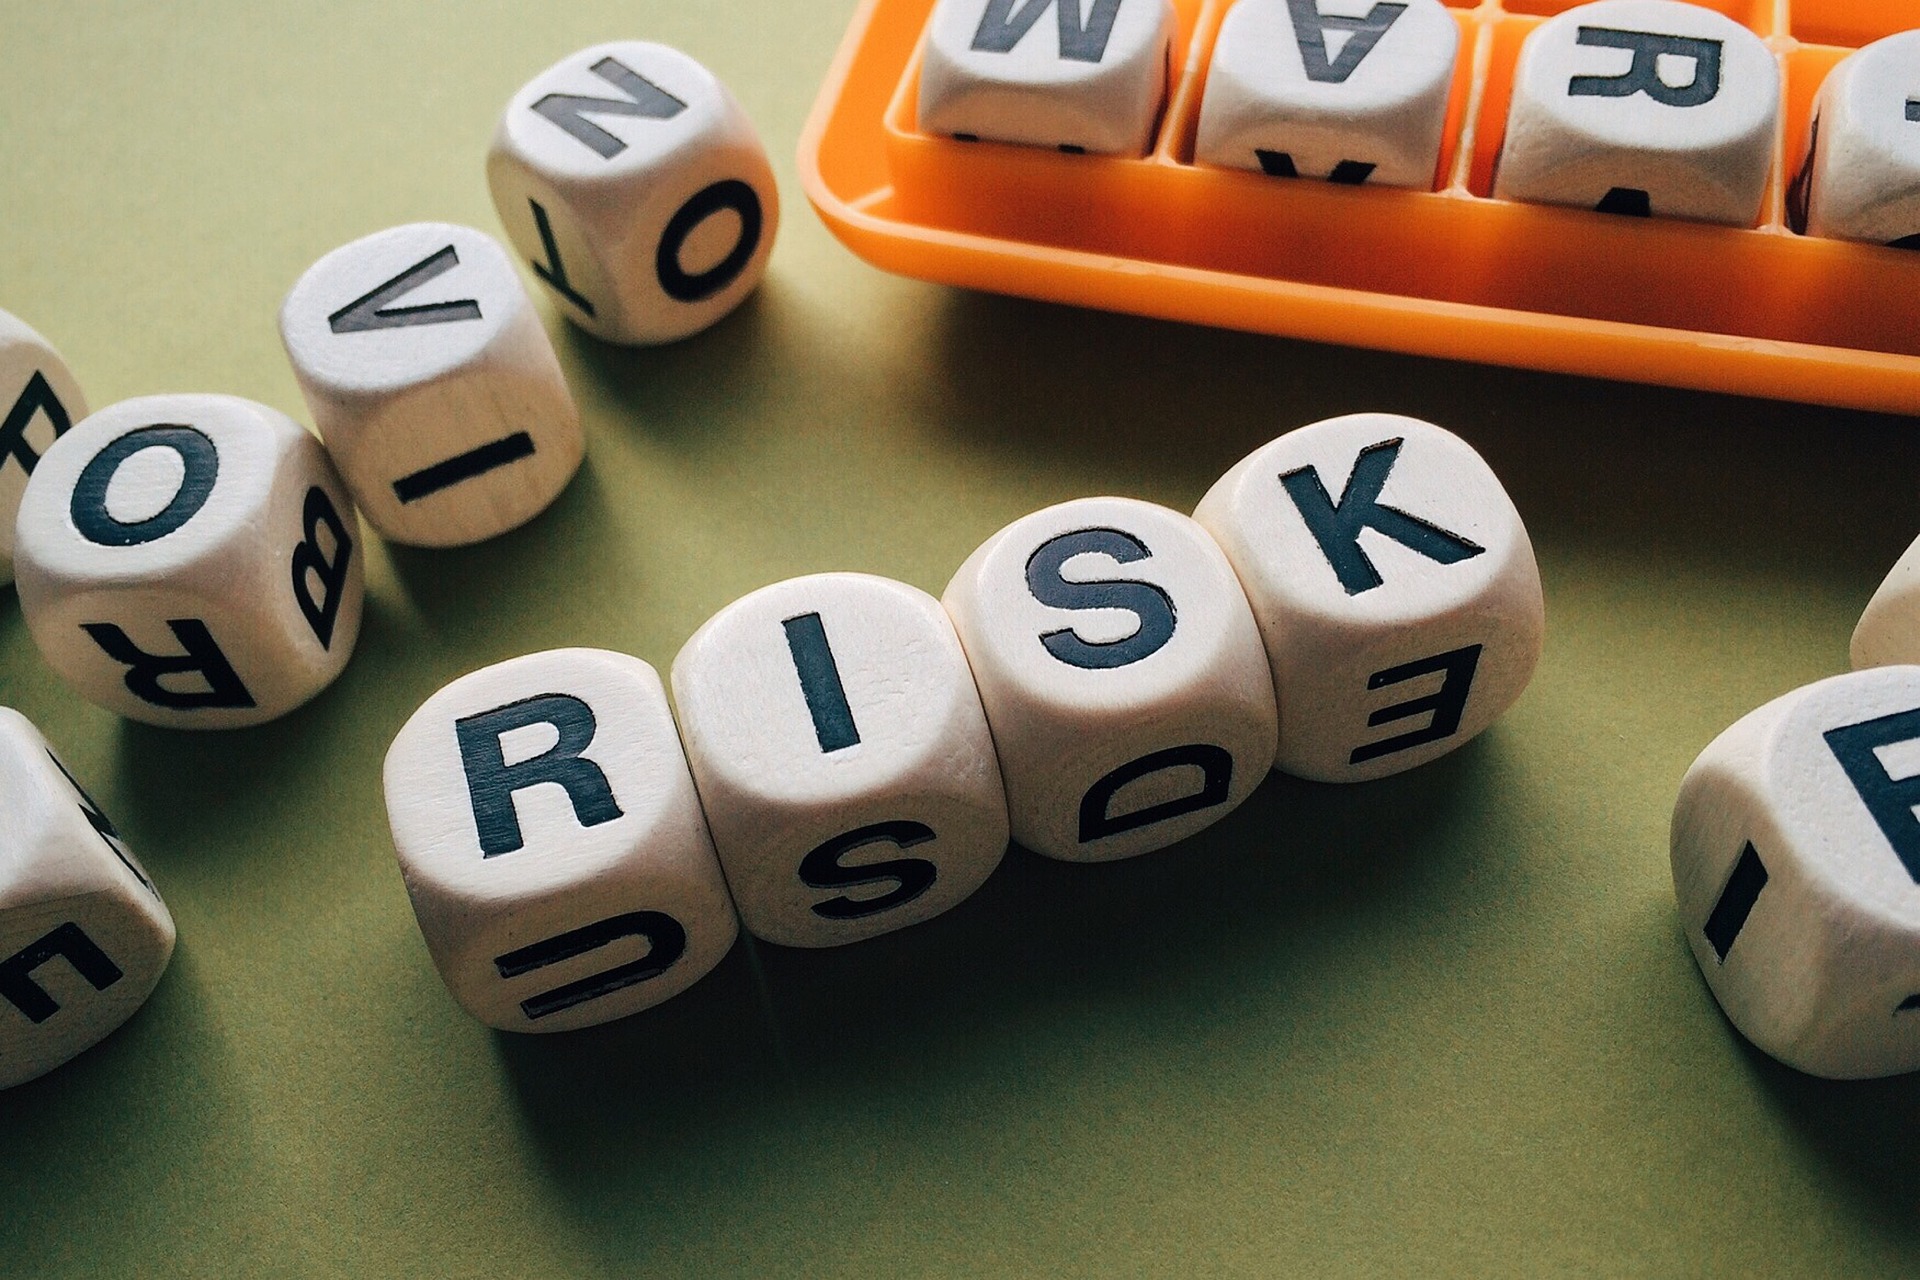 Zarządzanie ryzykiem w przedsiębiorstwie - kluczowy element sukcesu biznesowego